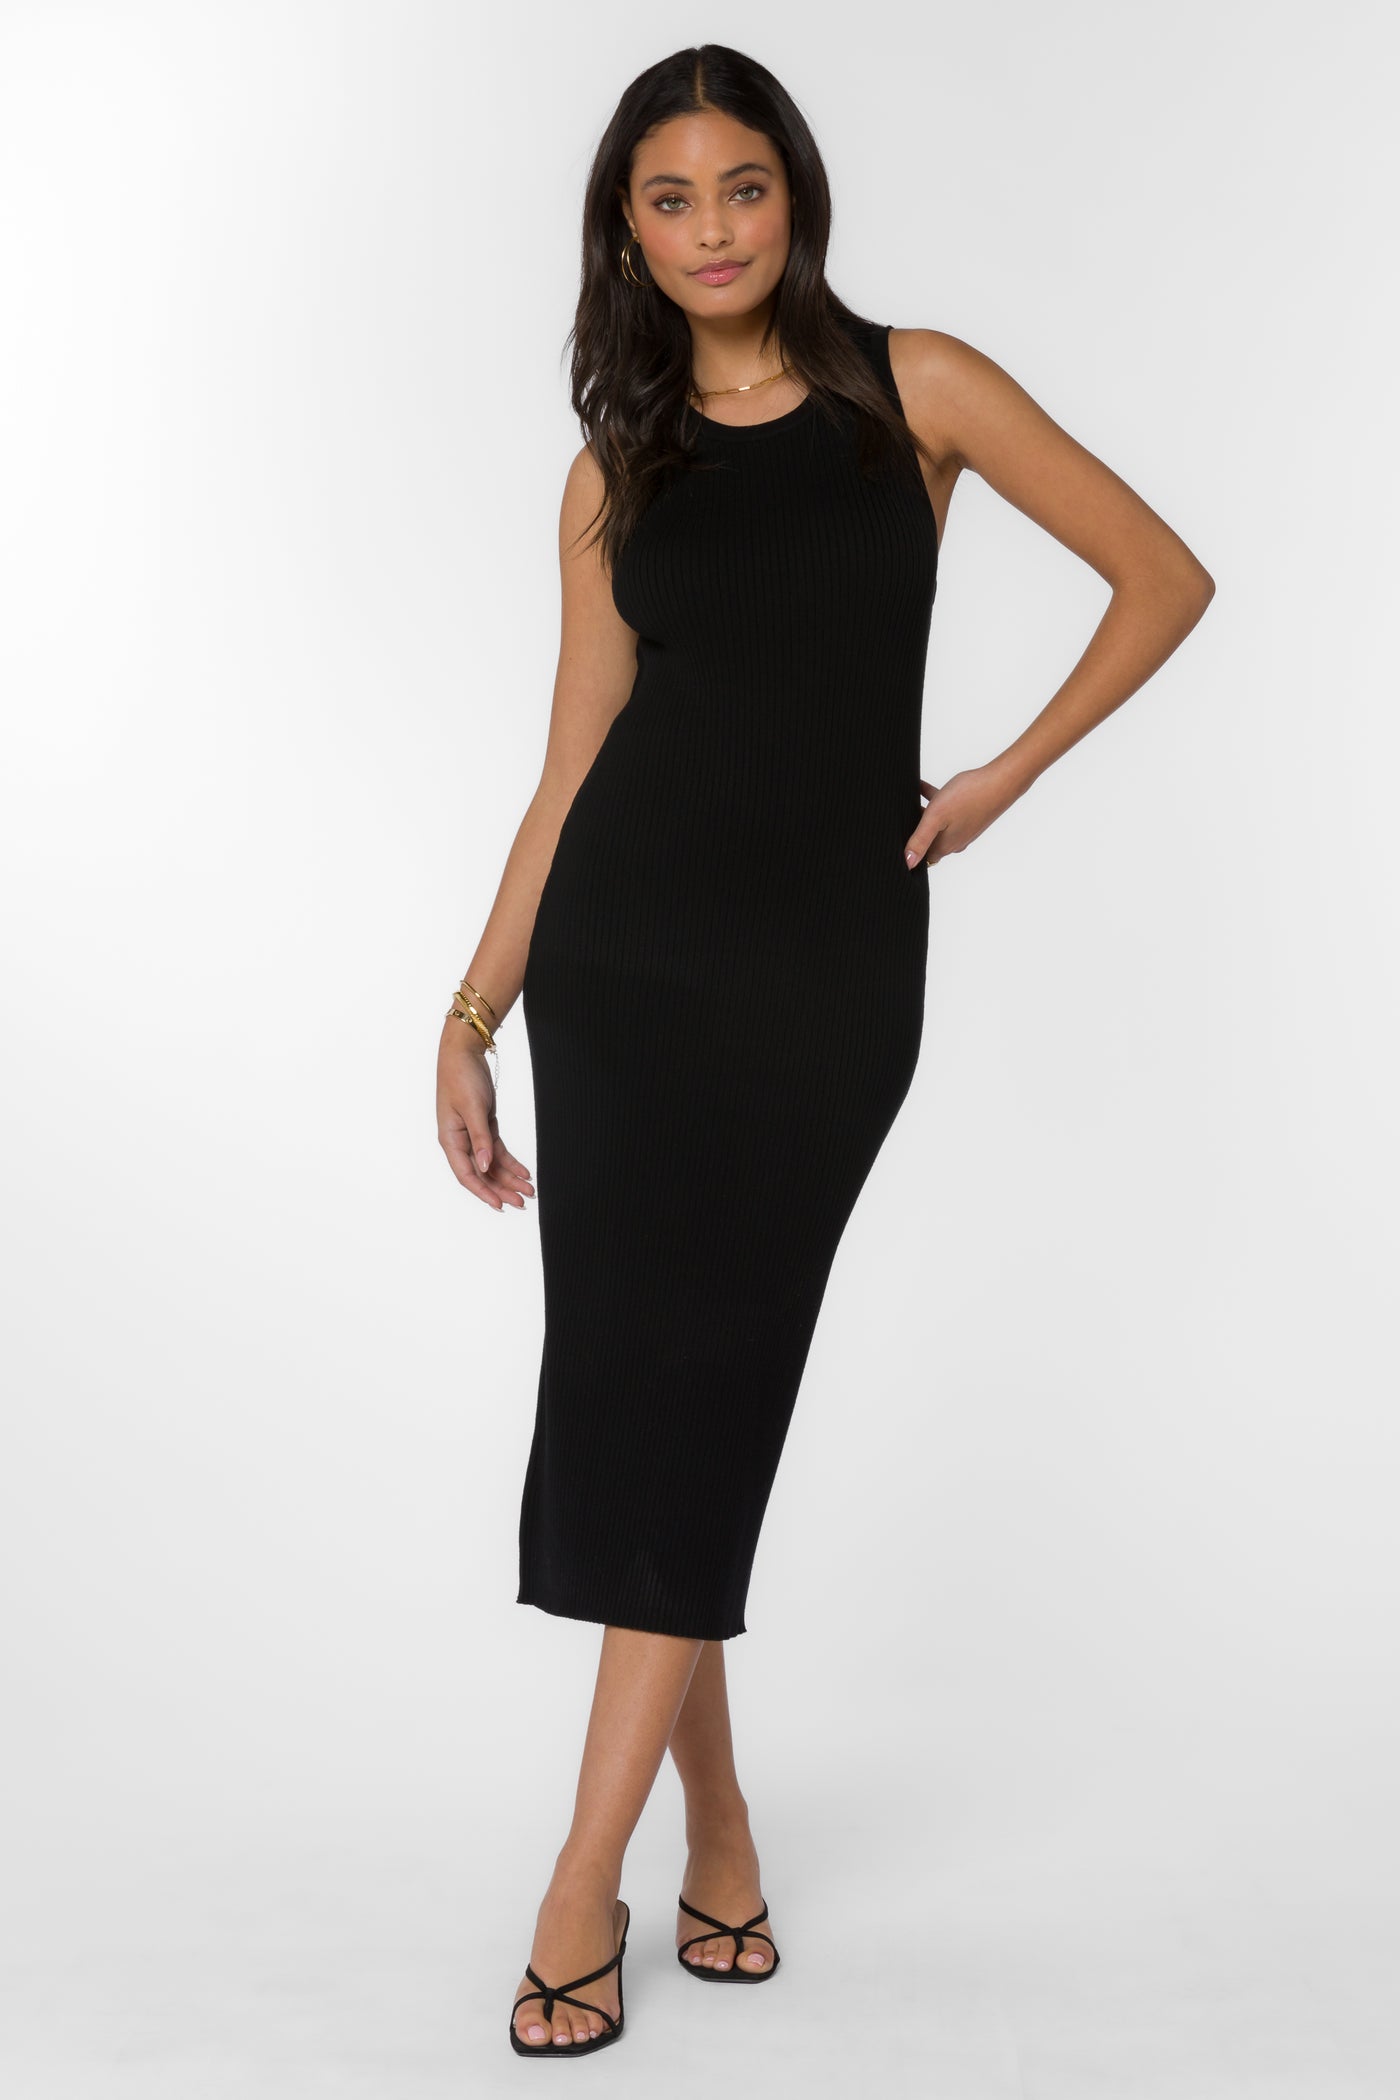 Raylene Black Dress - Dresses - Velvet Heart Clothing